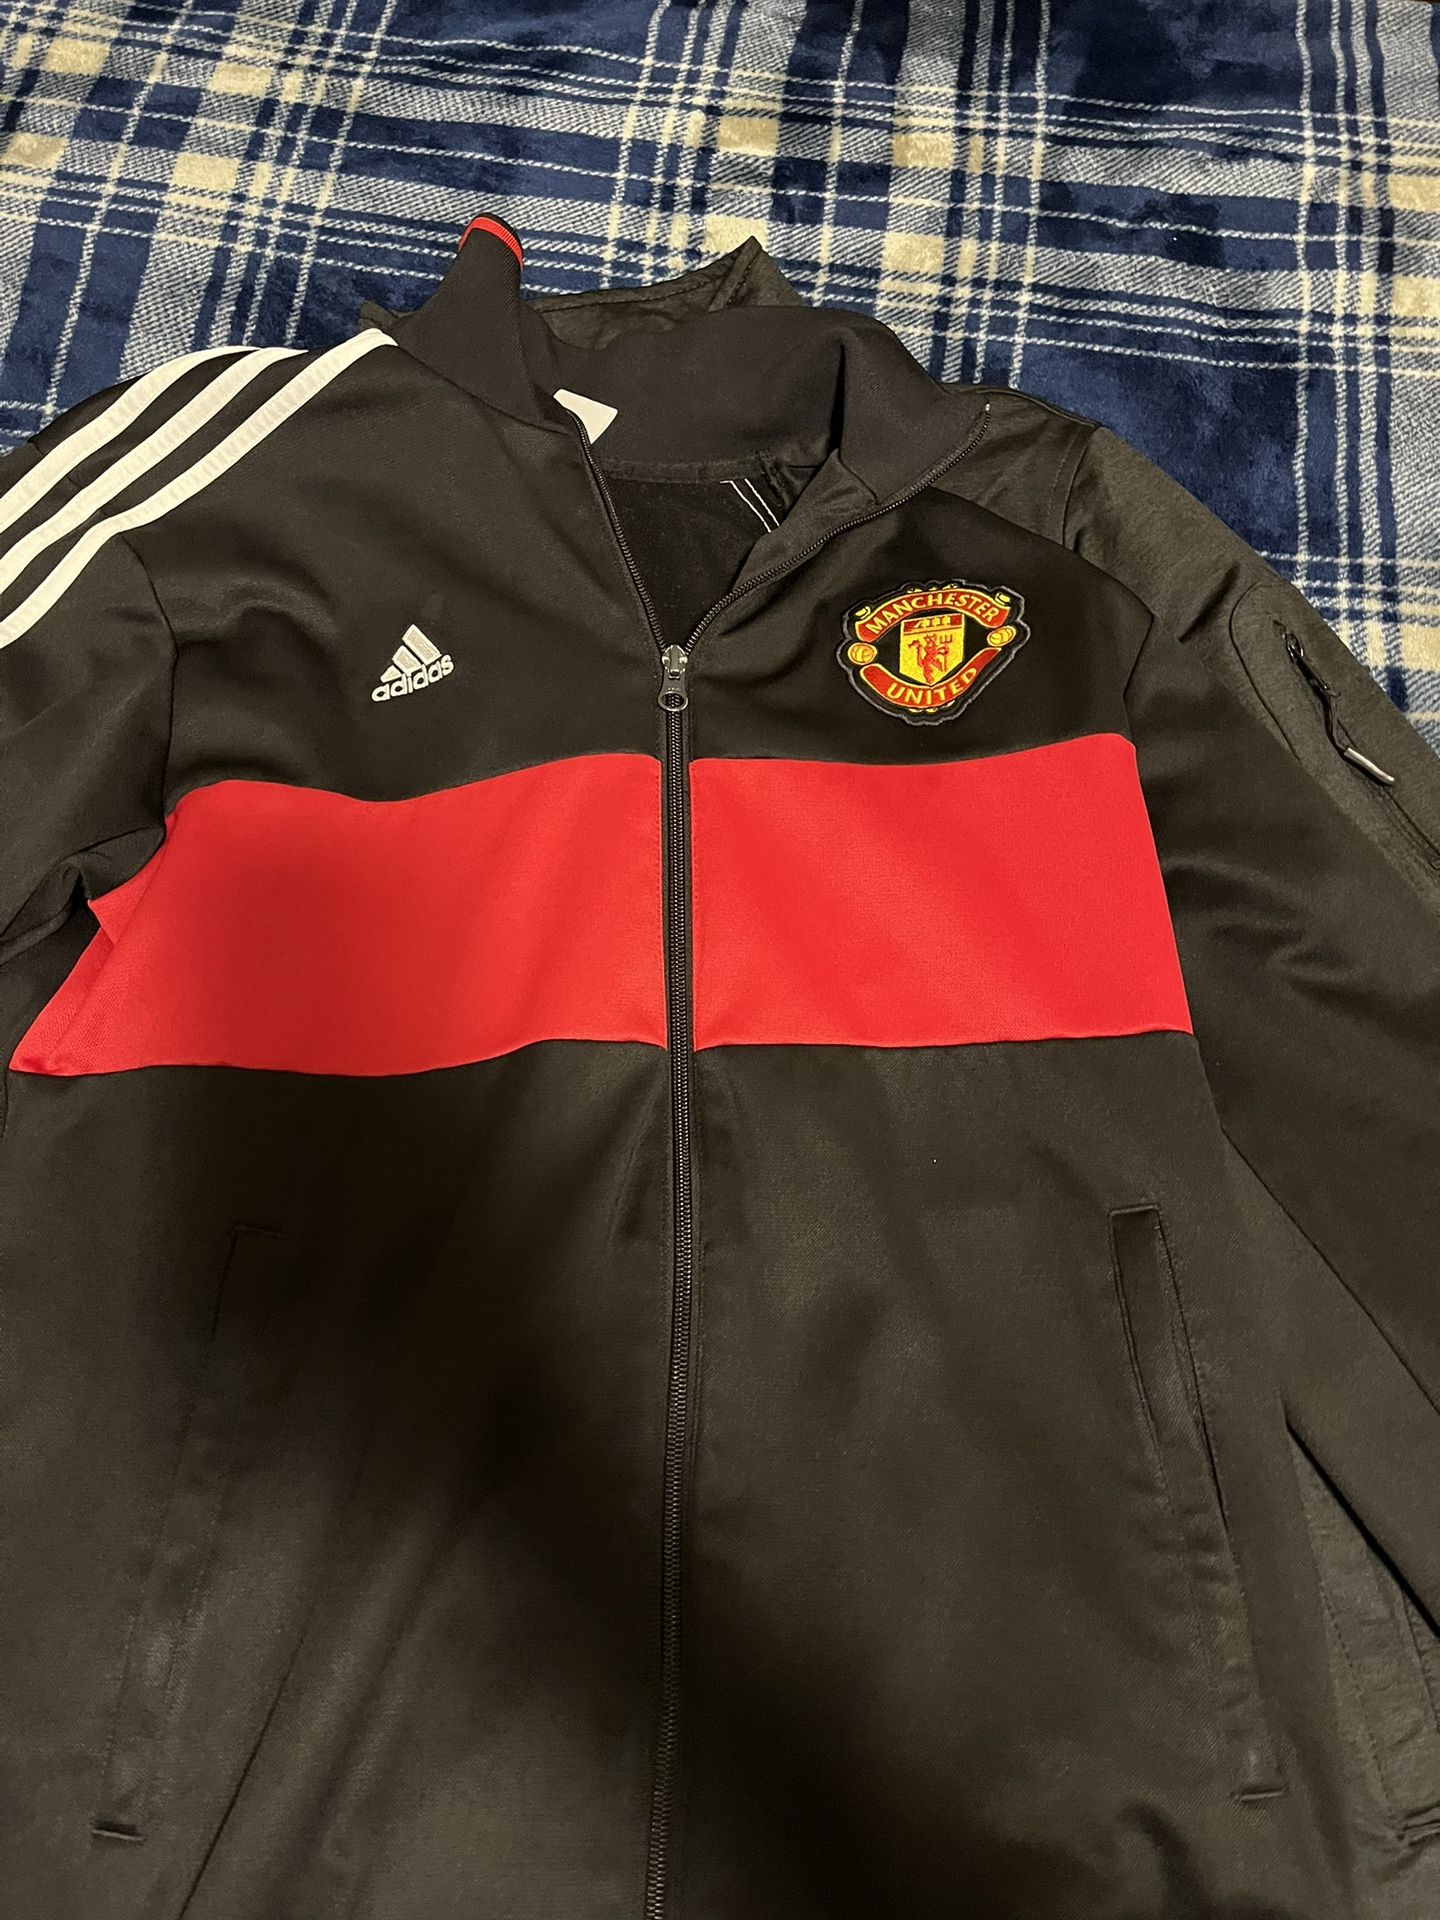 Manchester United Jacket 